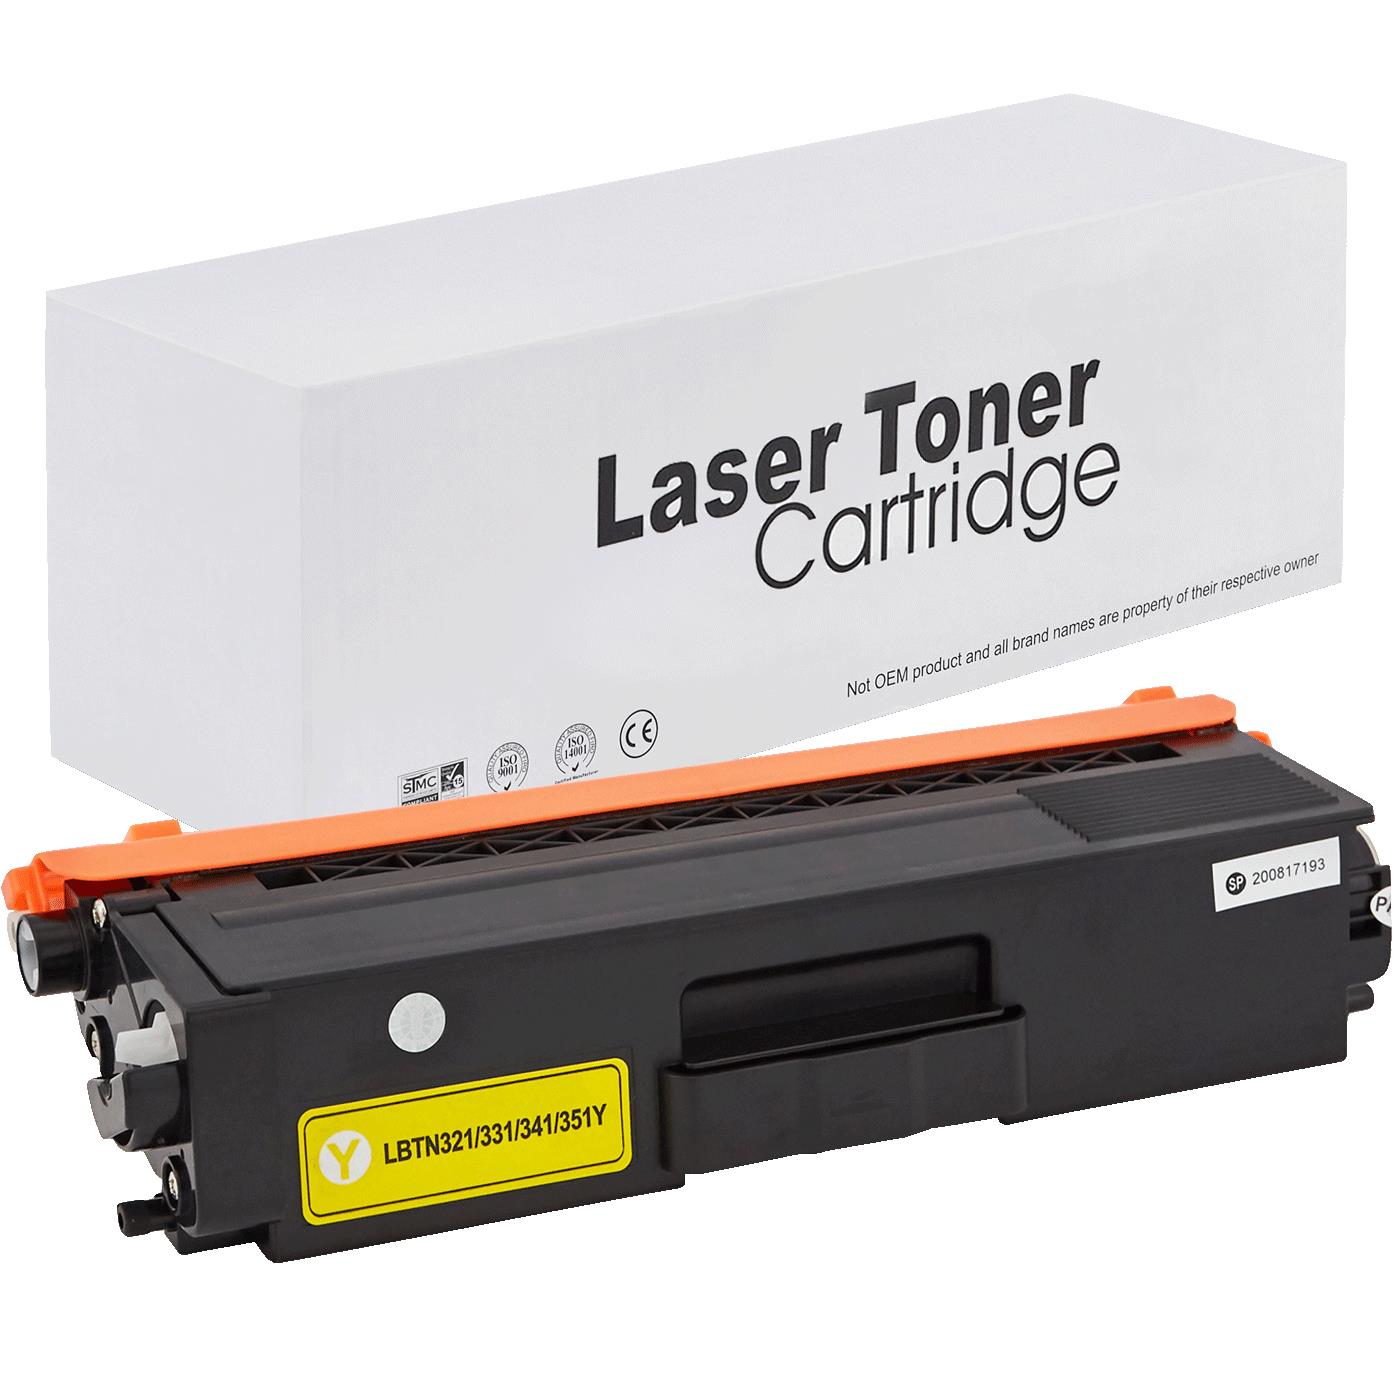 съвместима тонер касета за принтери и печатащи устройства на Brother DCP-L 8400 CDN Toner BR-321Y | TN321Y. Ниски цени, прецизно изпълнение, високо качество.